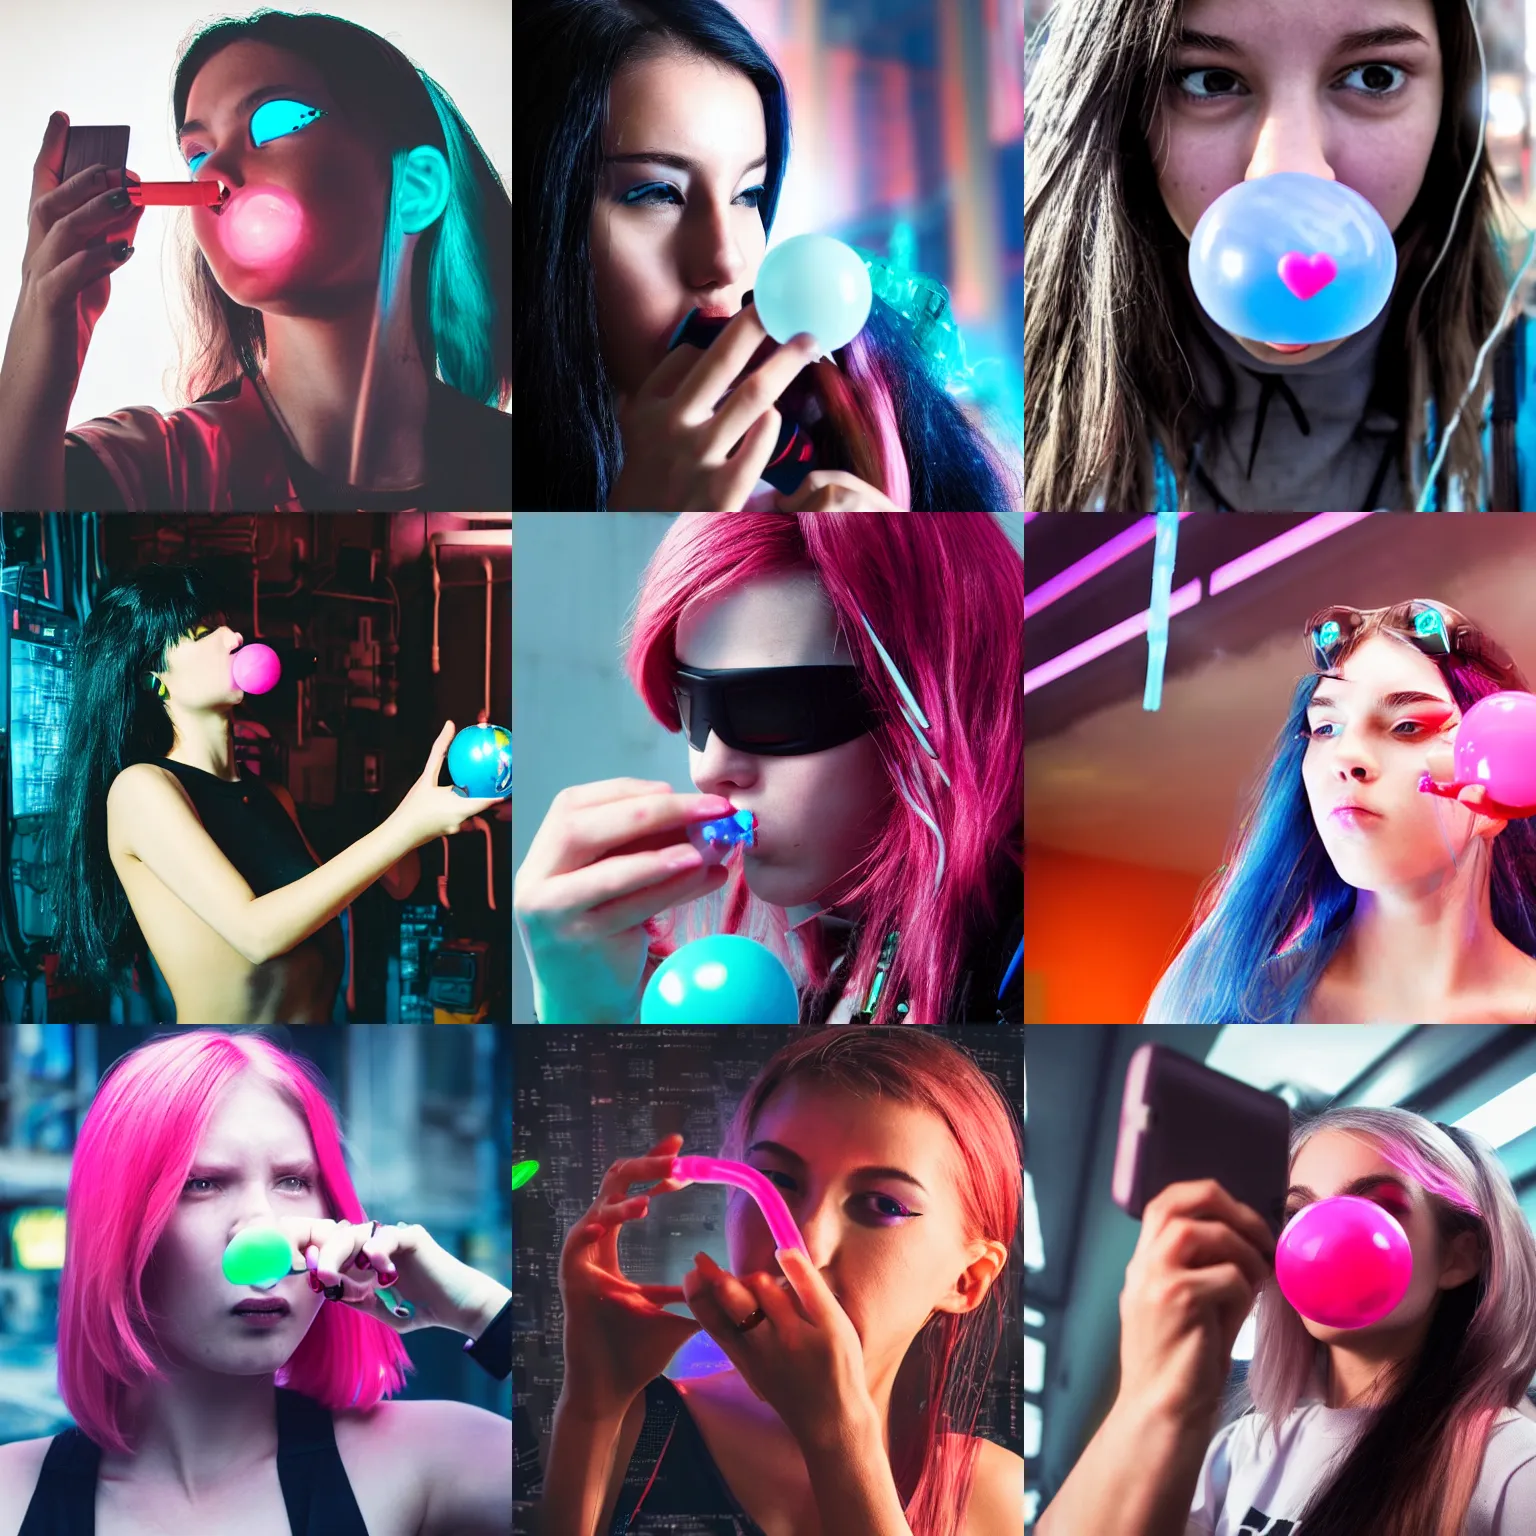 Prompt: selfie of a cyberpunk girl blowing a bubblegum